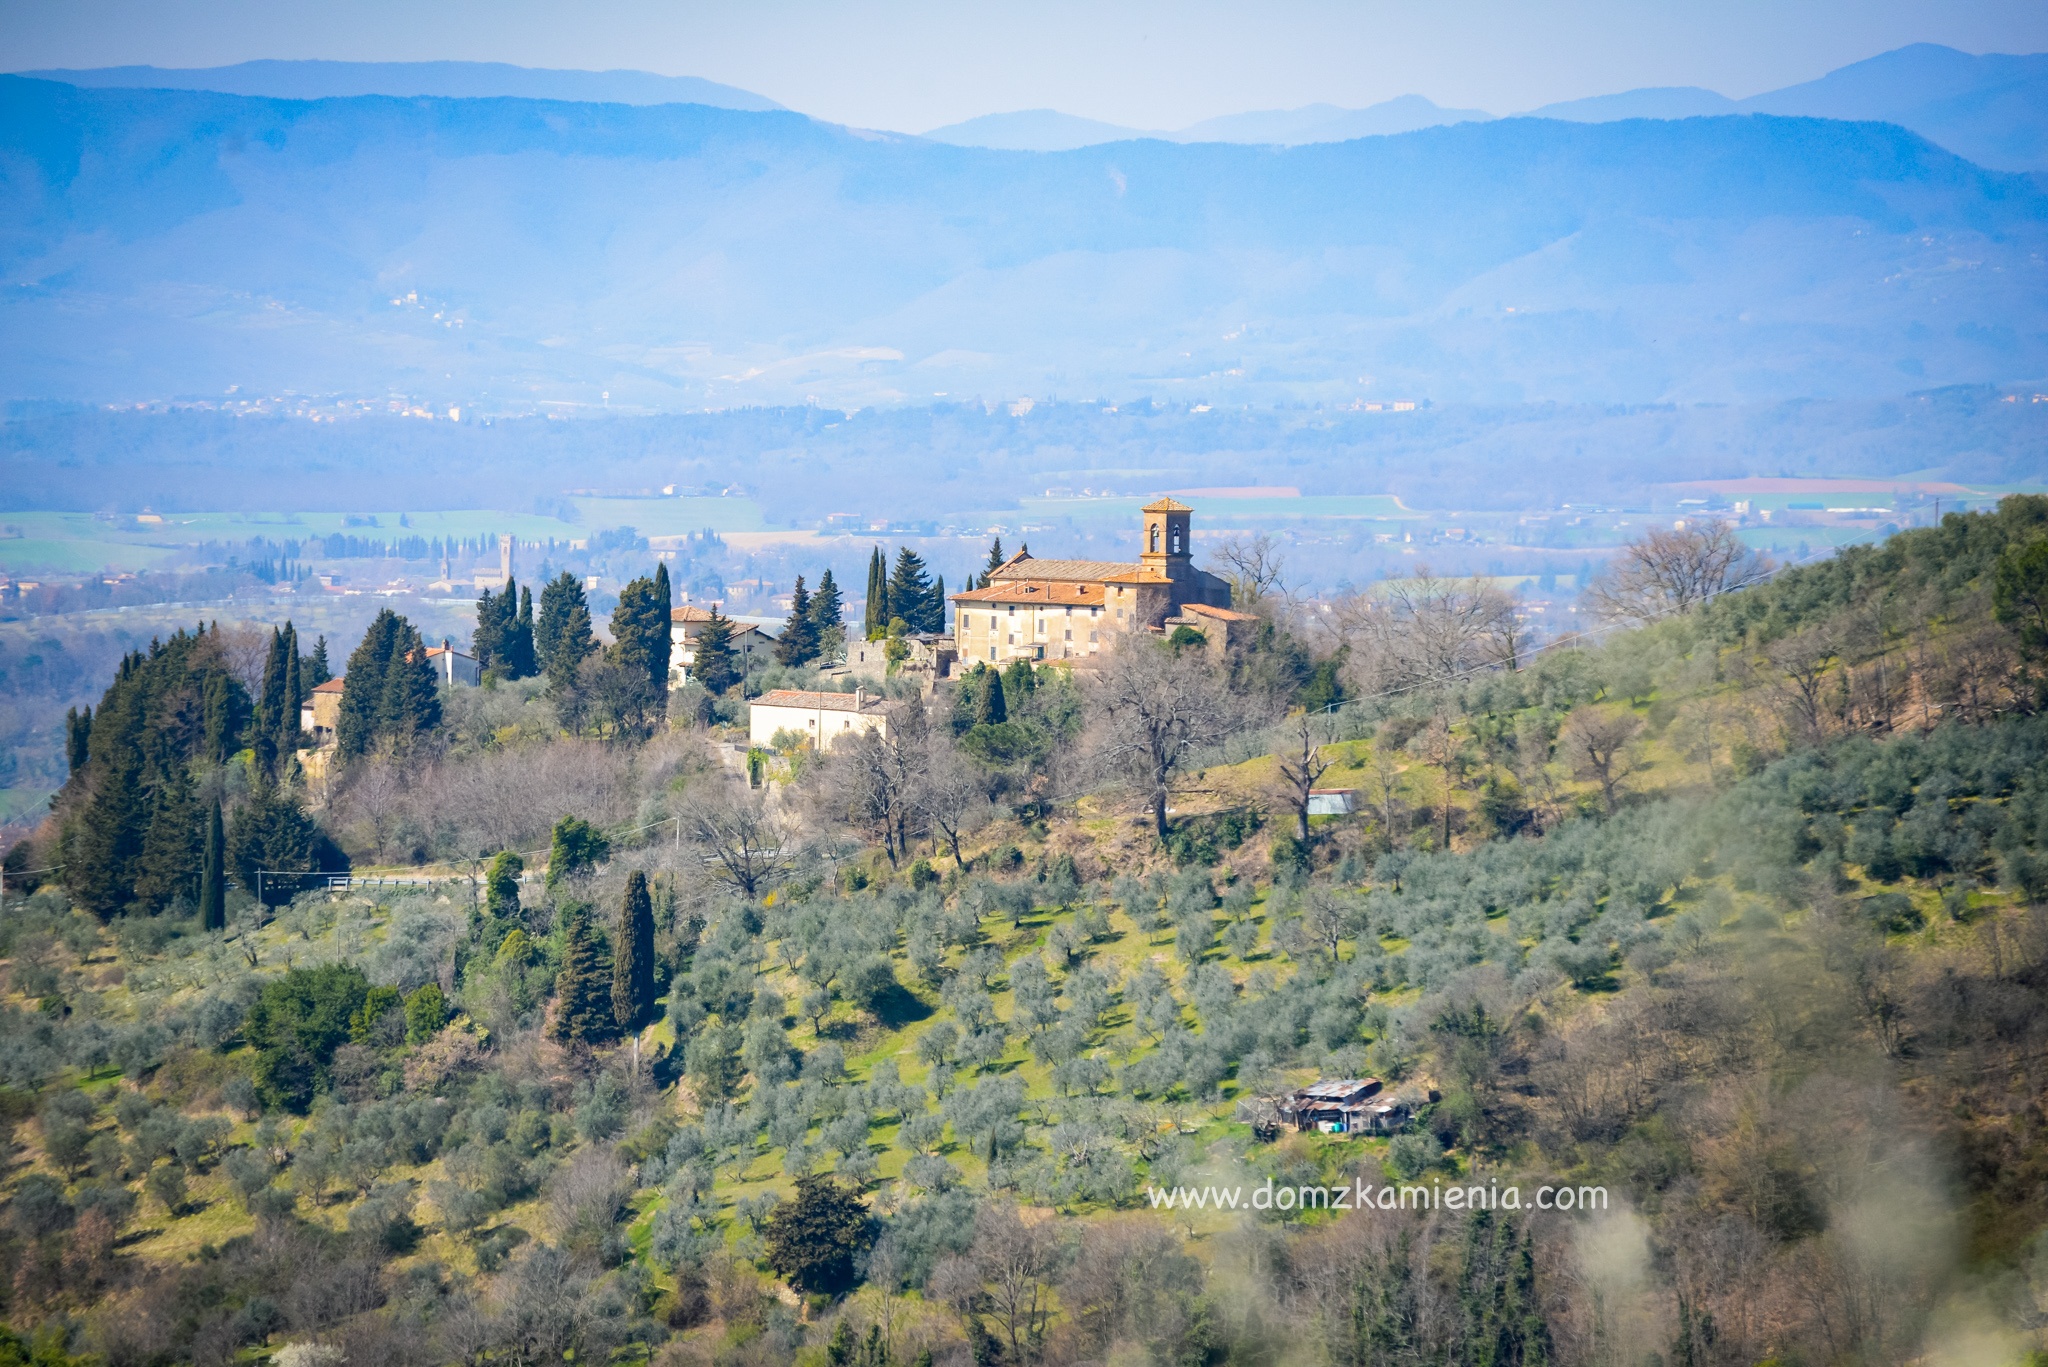 Panoramica Mugello - Dom z Kamienia blog